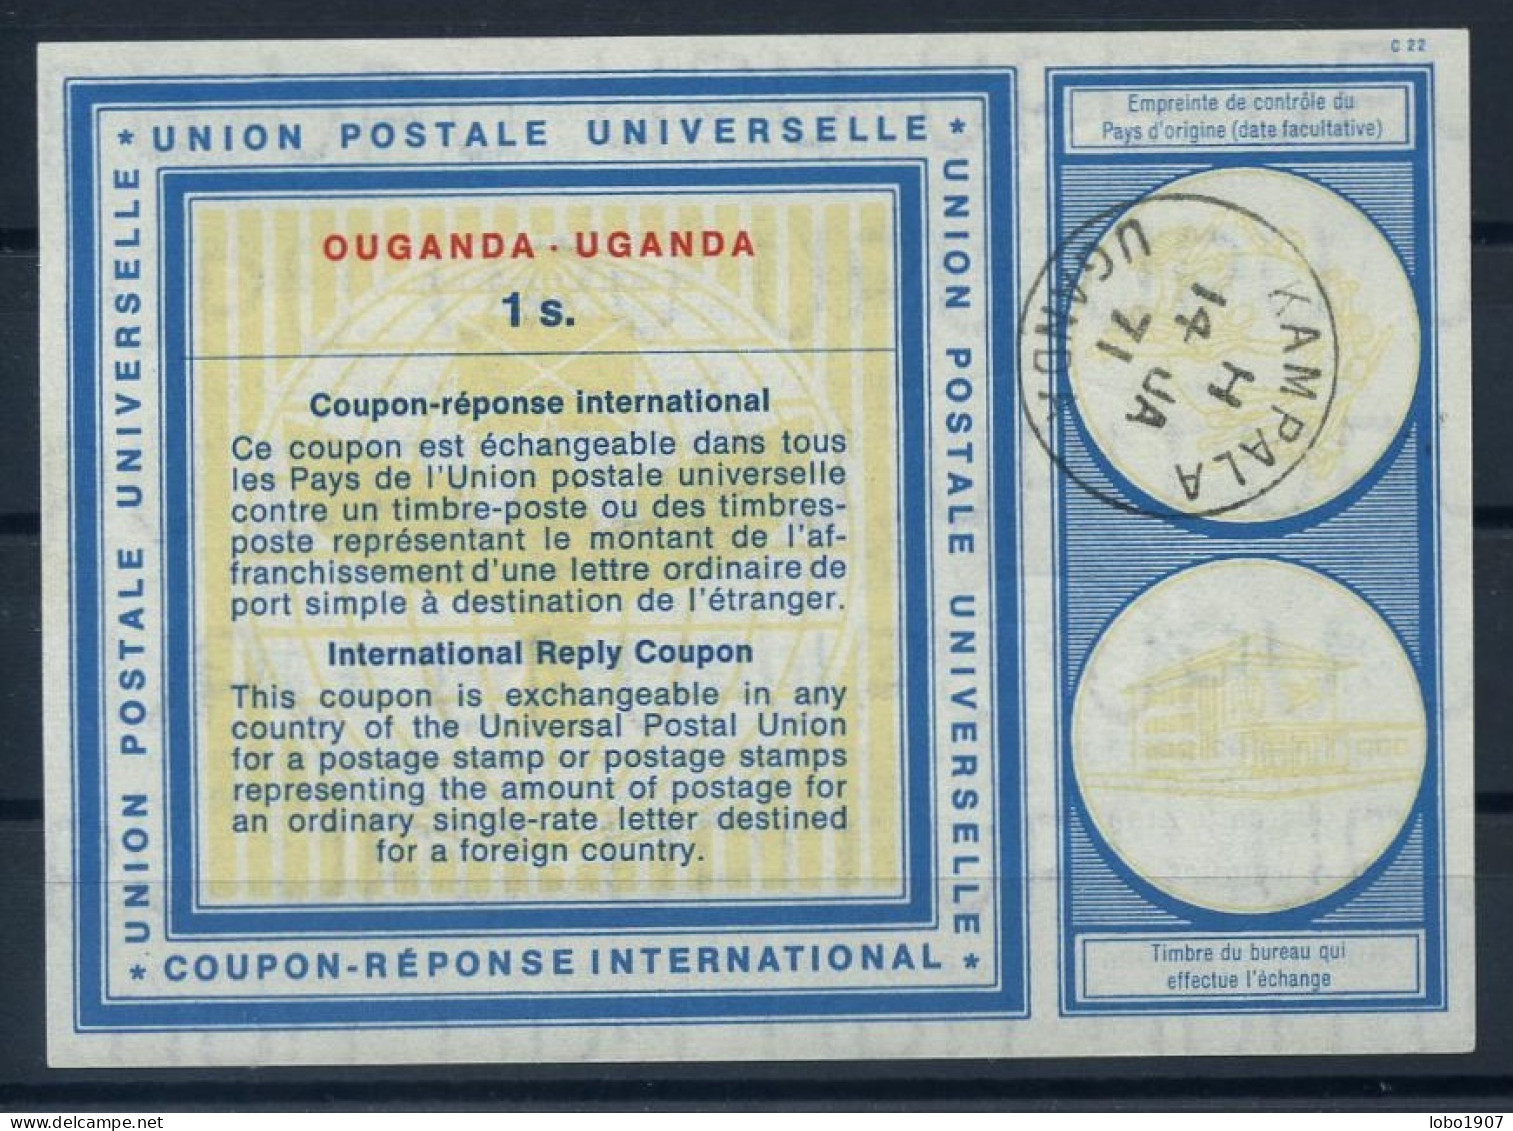 OUGANDA UGANDA  Vi19  1s.  International Reply Coupon Reponse Antwortschein IRC IAS  O KAMPALA UGANDA 14.01.71 - Kenya, Uganda & Tanganyika